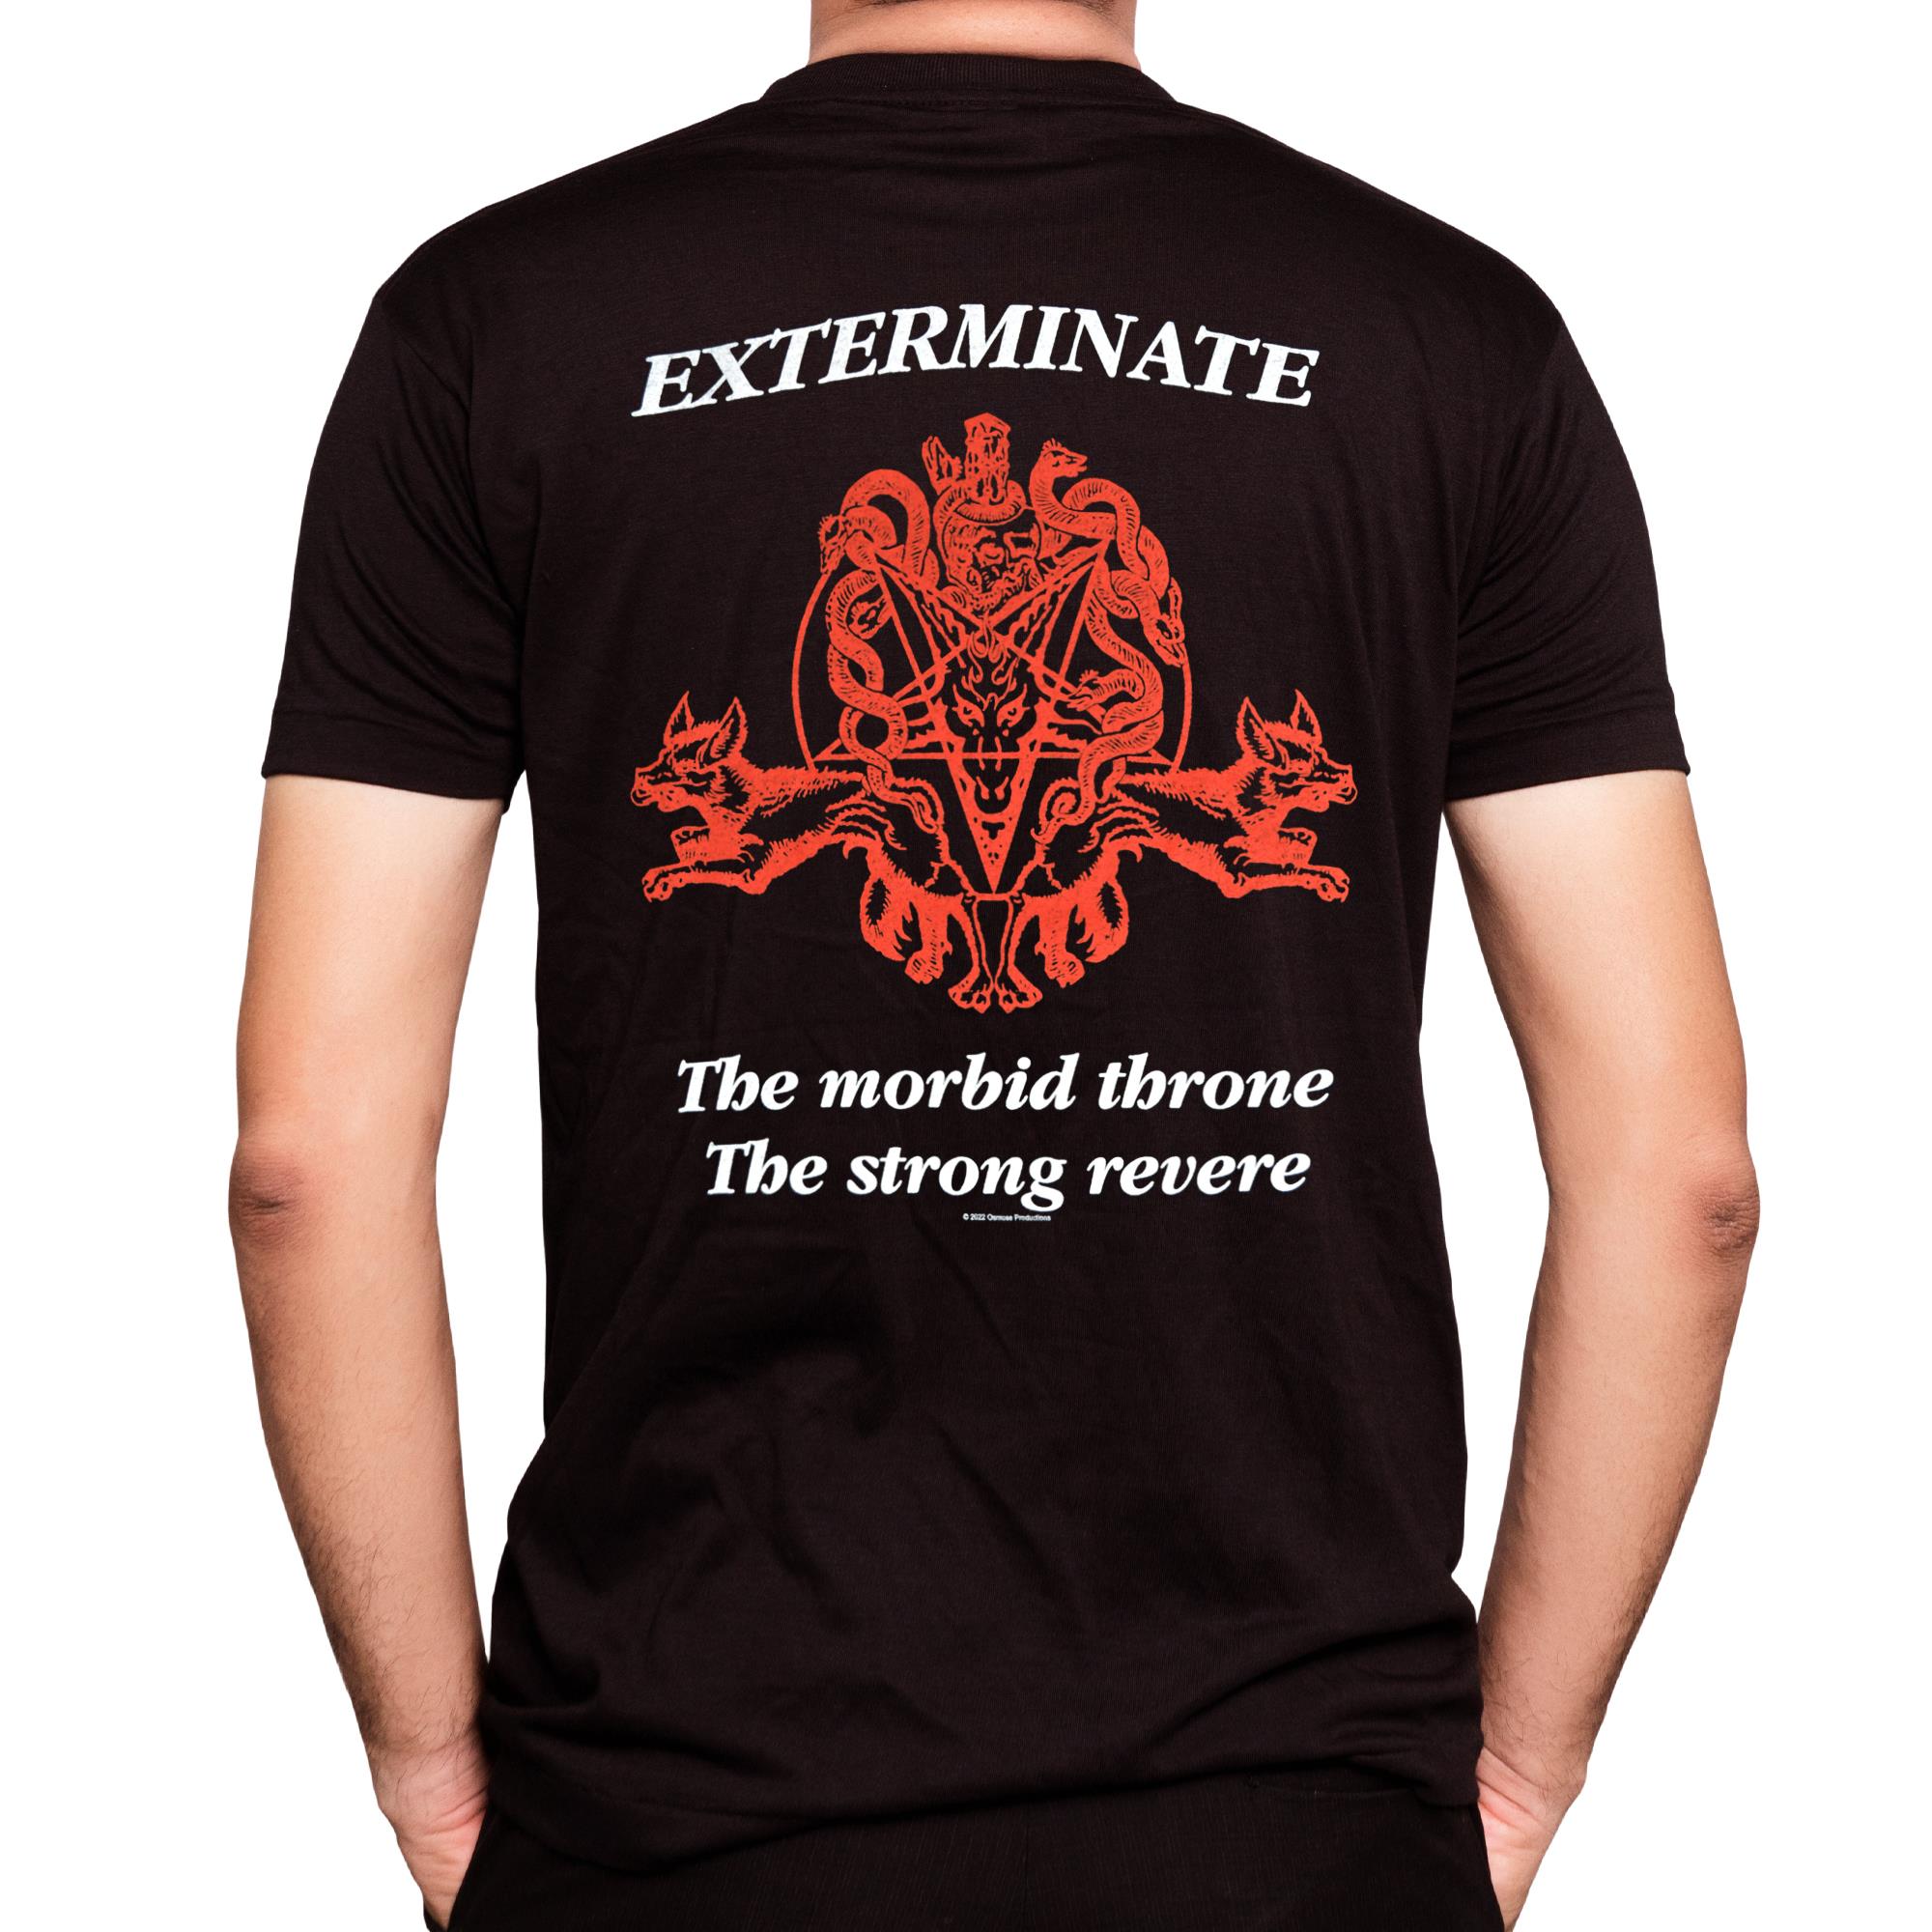 Exterminate T-Shirt